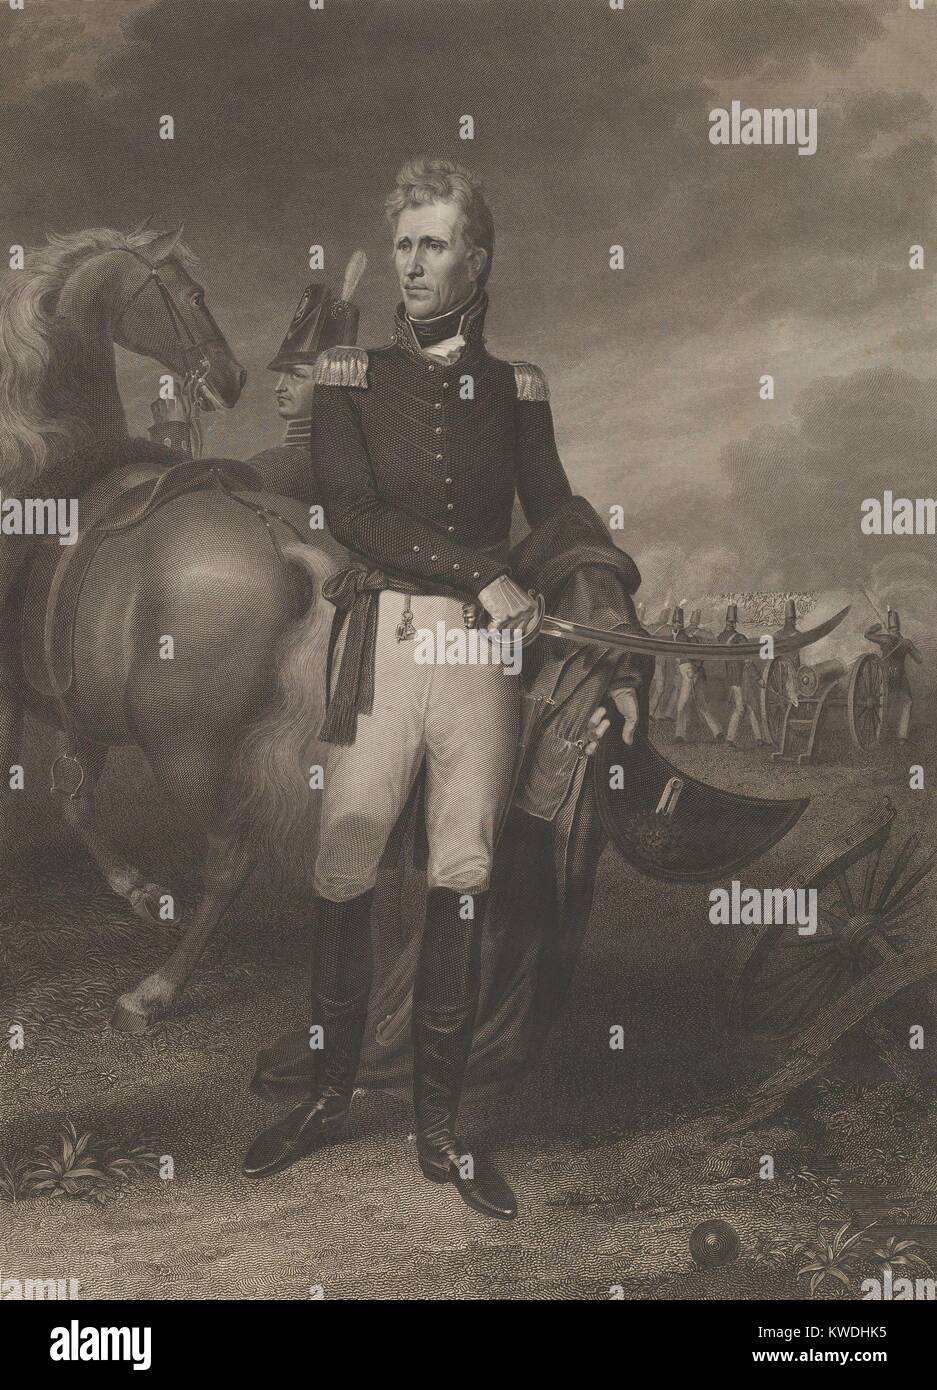 General Andrew Jackson im Jahr 1828 Militärische portrait Gravur von Asher Brown Durand. Von einem Gemälde von John Vanderlyn, die Jackson in Uniformen mit in der Nähe Pferd und Soldaten feuern Kanonen im Hintergrund kopiert (BSLOC 2017 6 4) Stockfoto